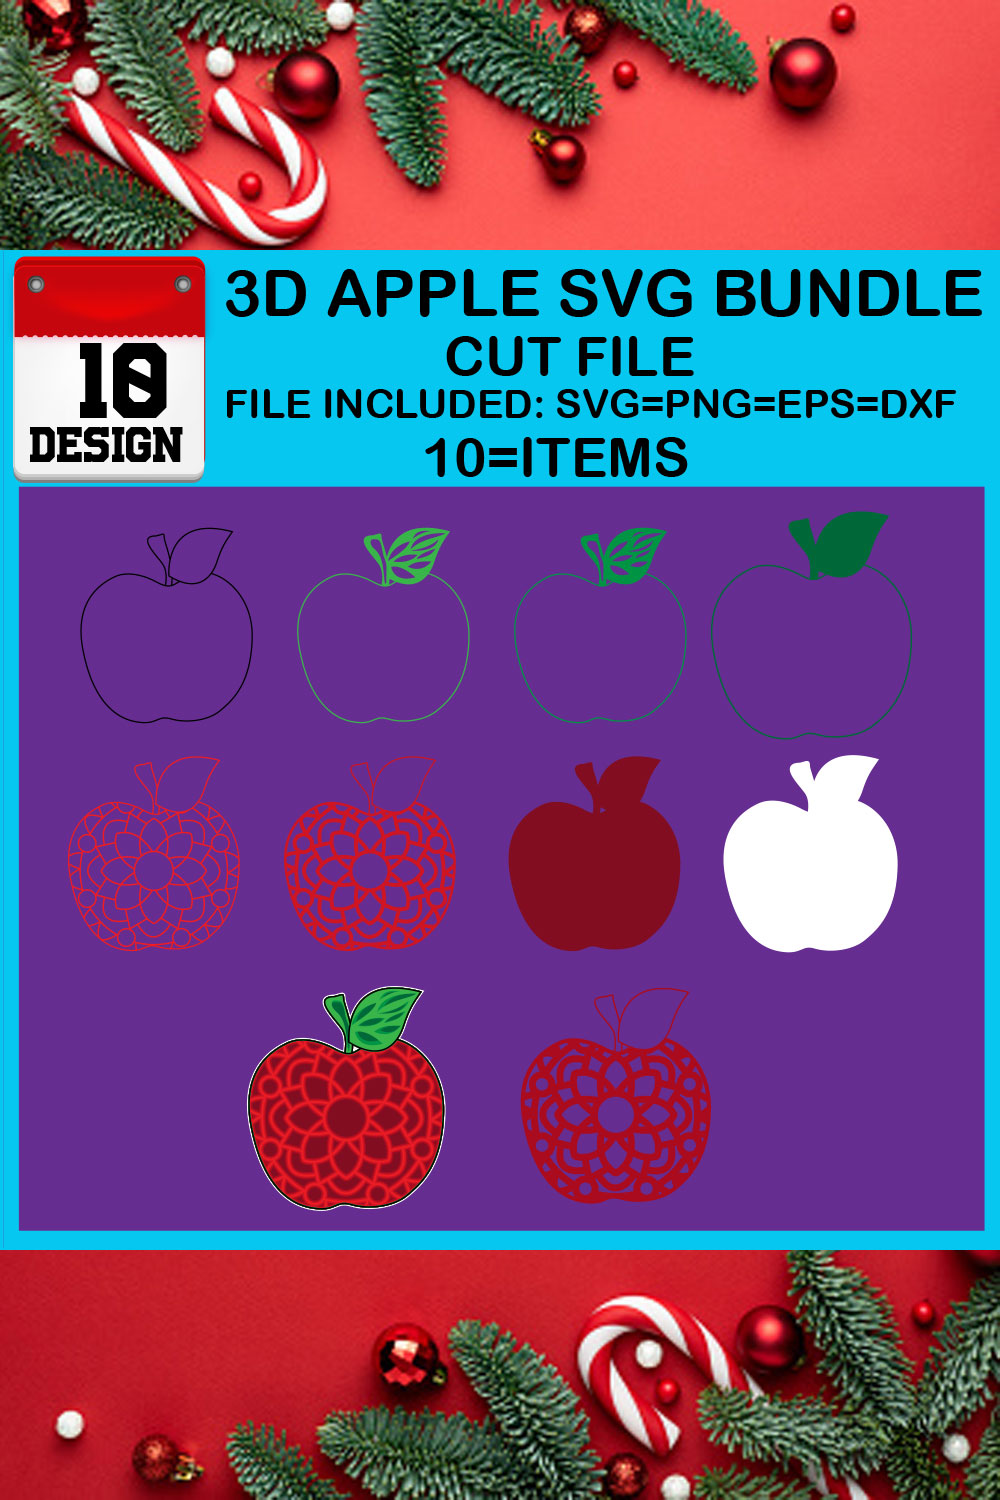 3D Apple SVG Bundle Cut File pinterest preview image.